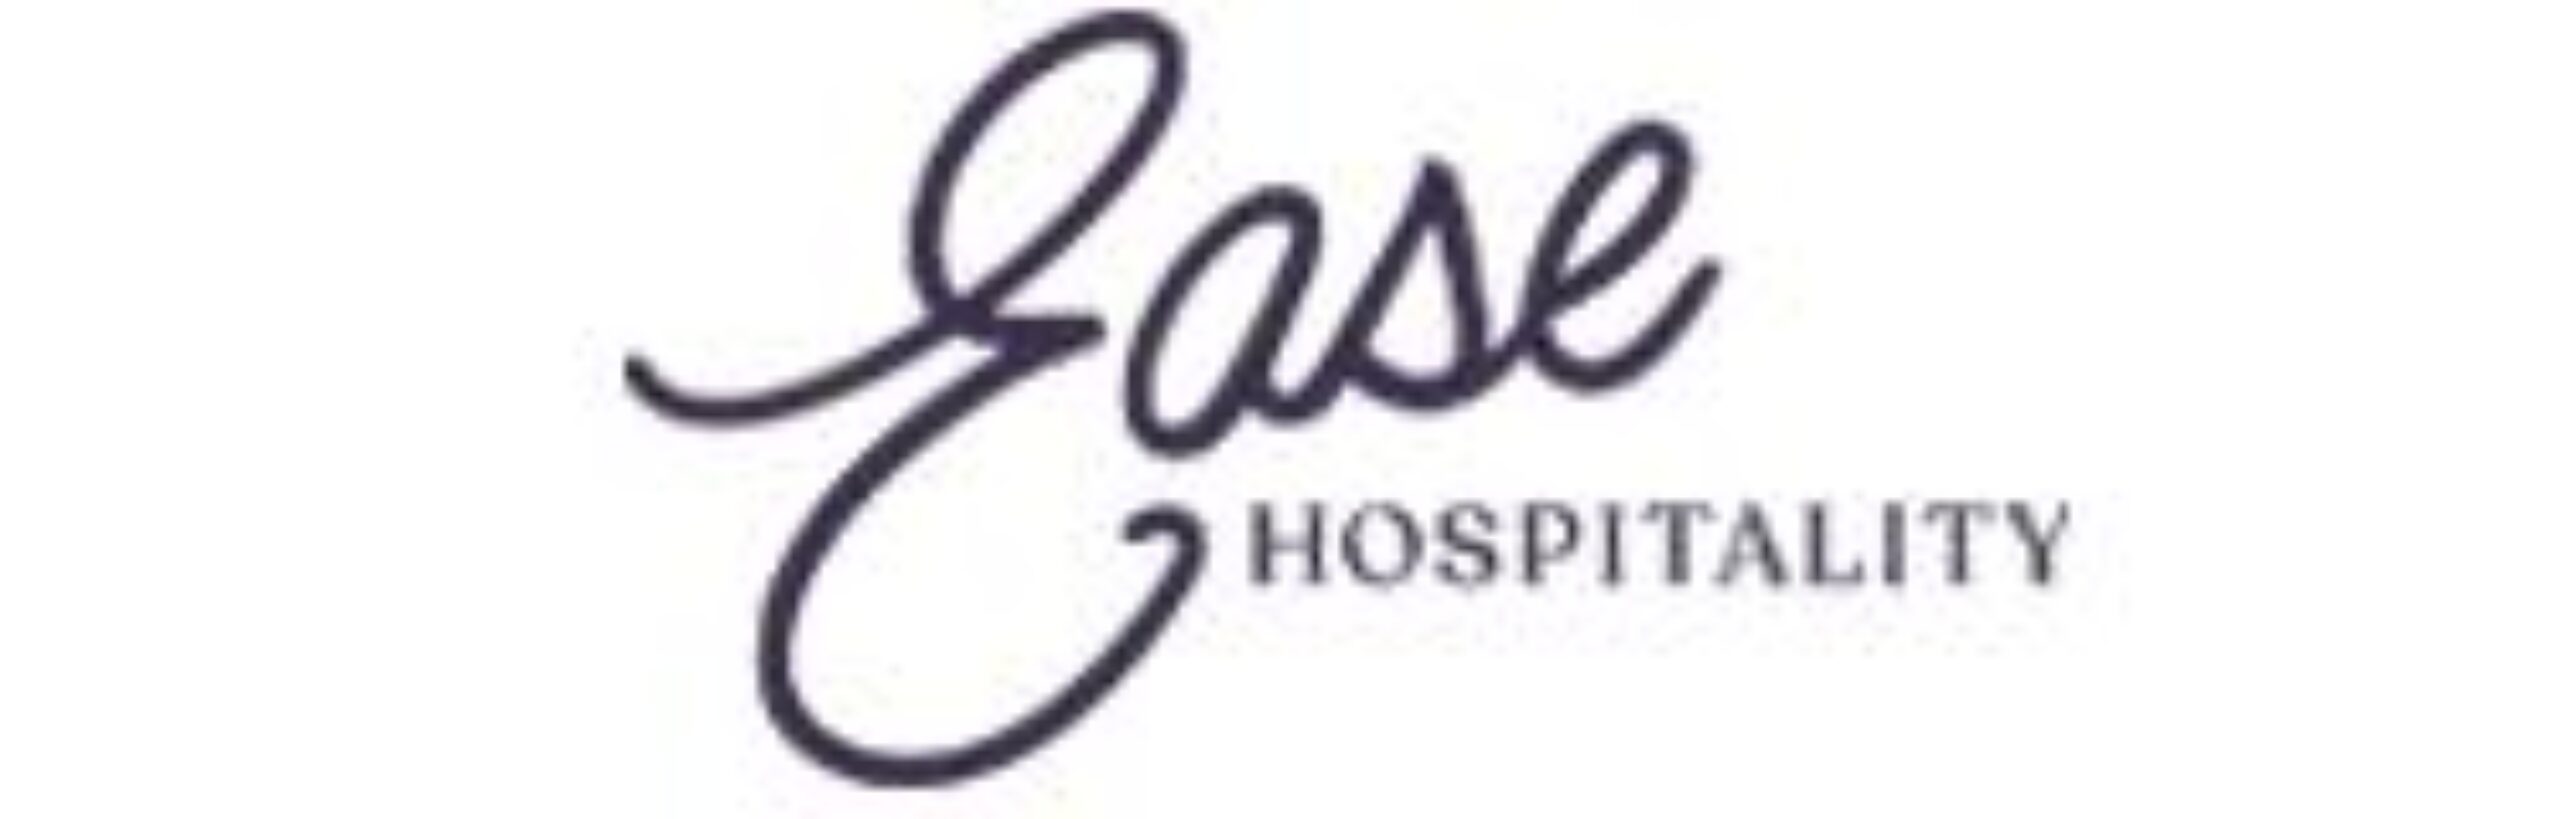 Ease Hospitality logo